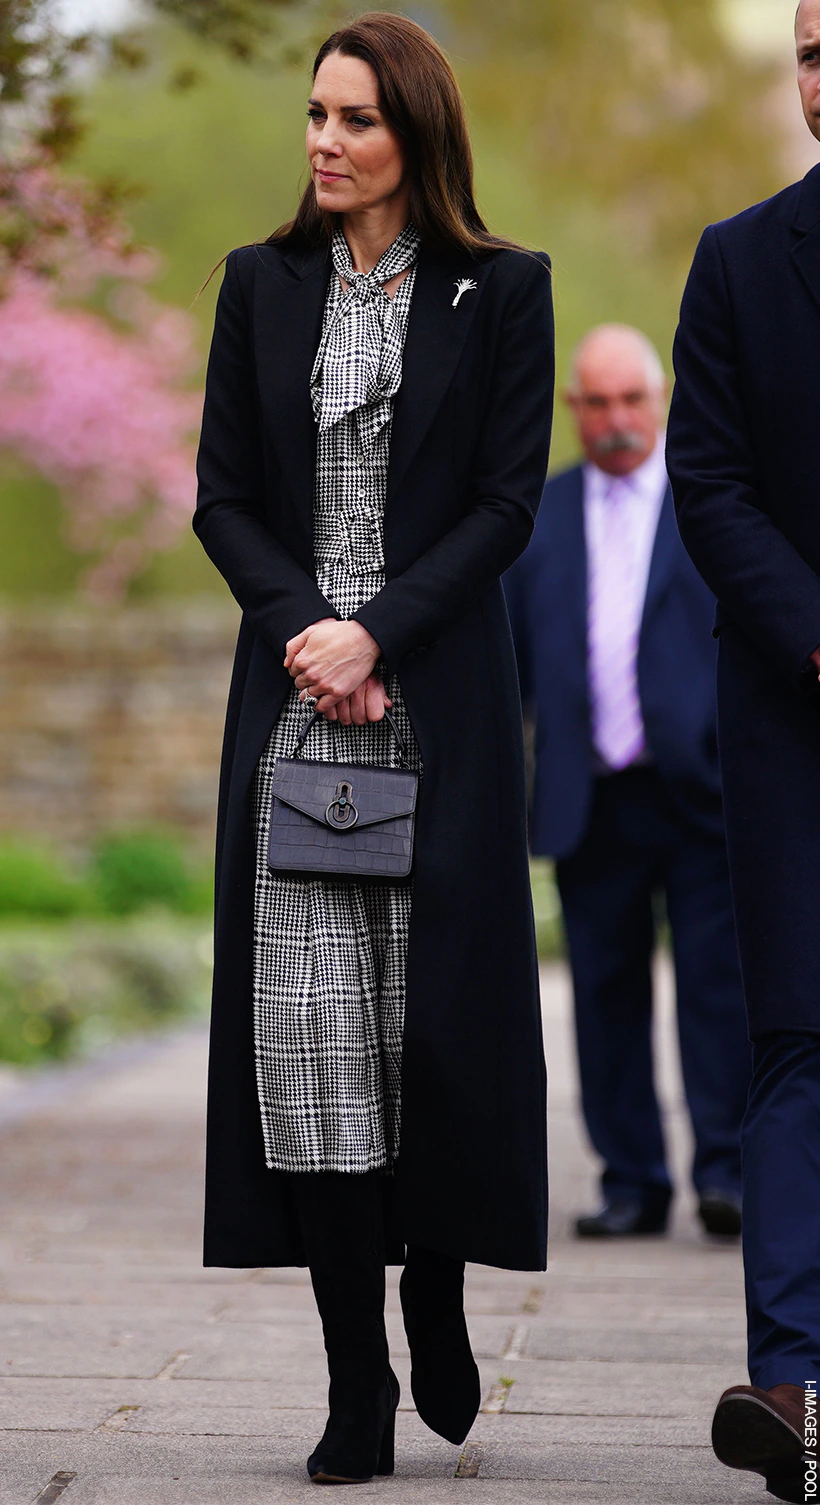 Kate Middleton's Favorite Handbags - The Vault